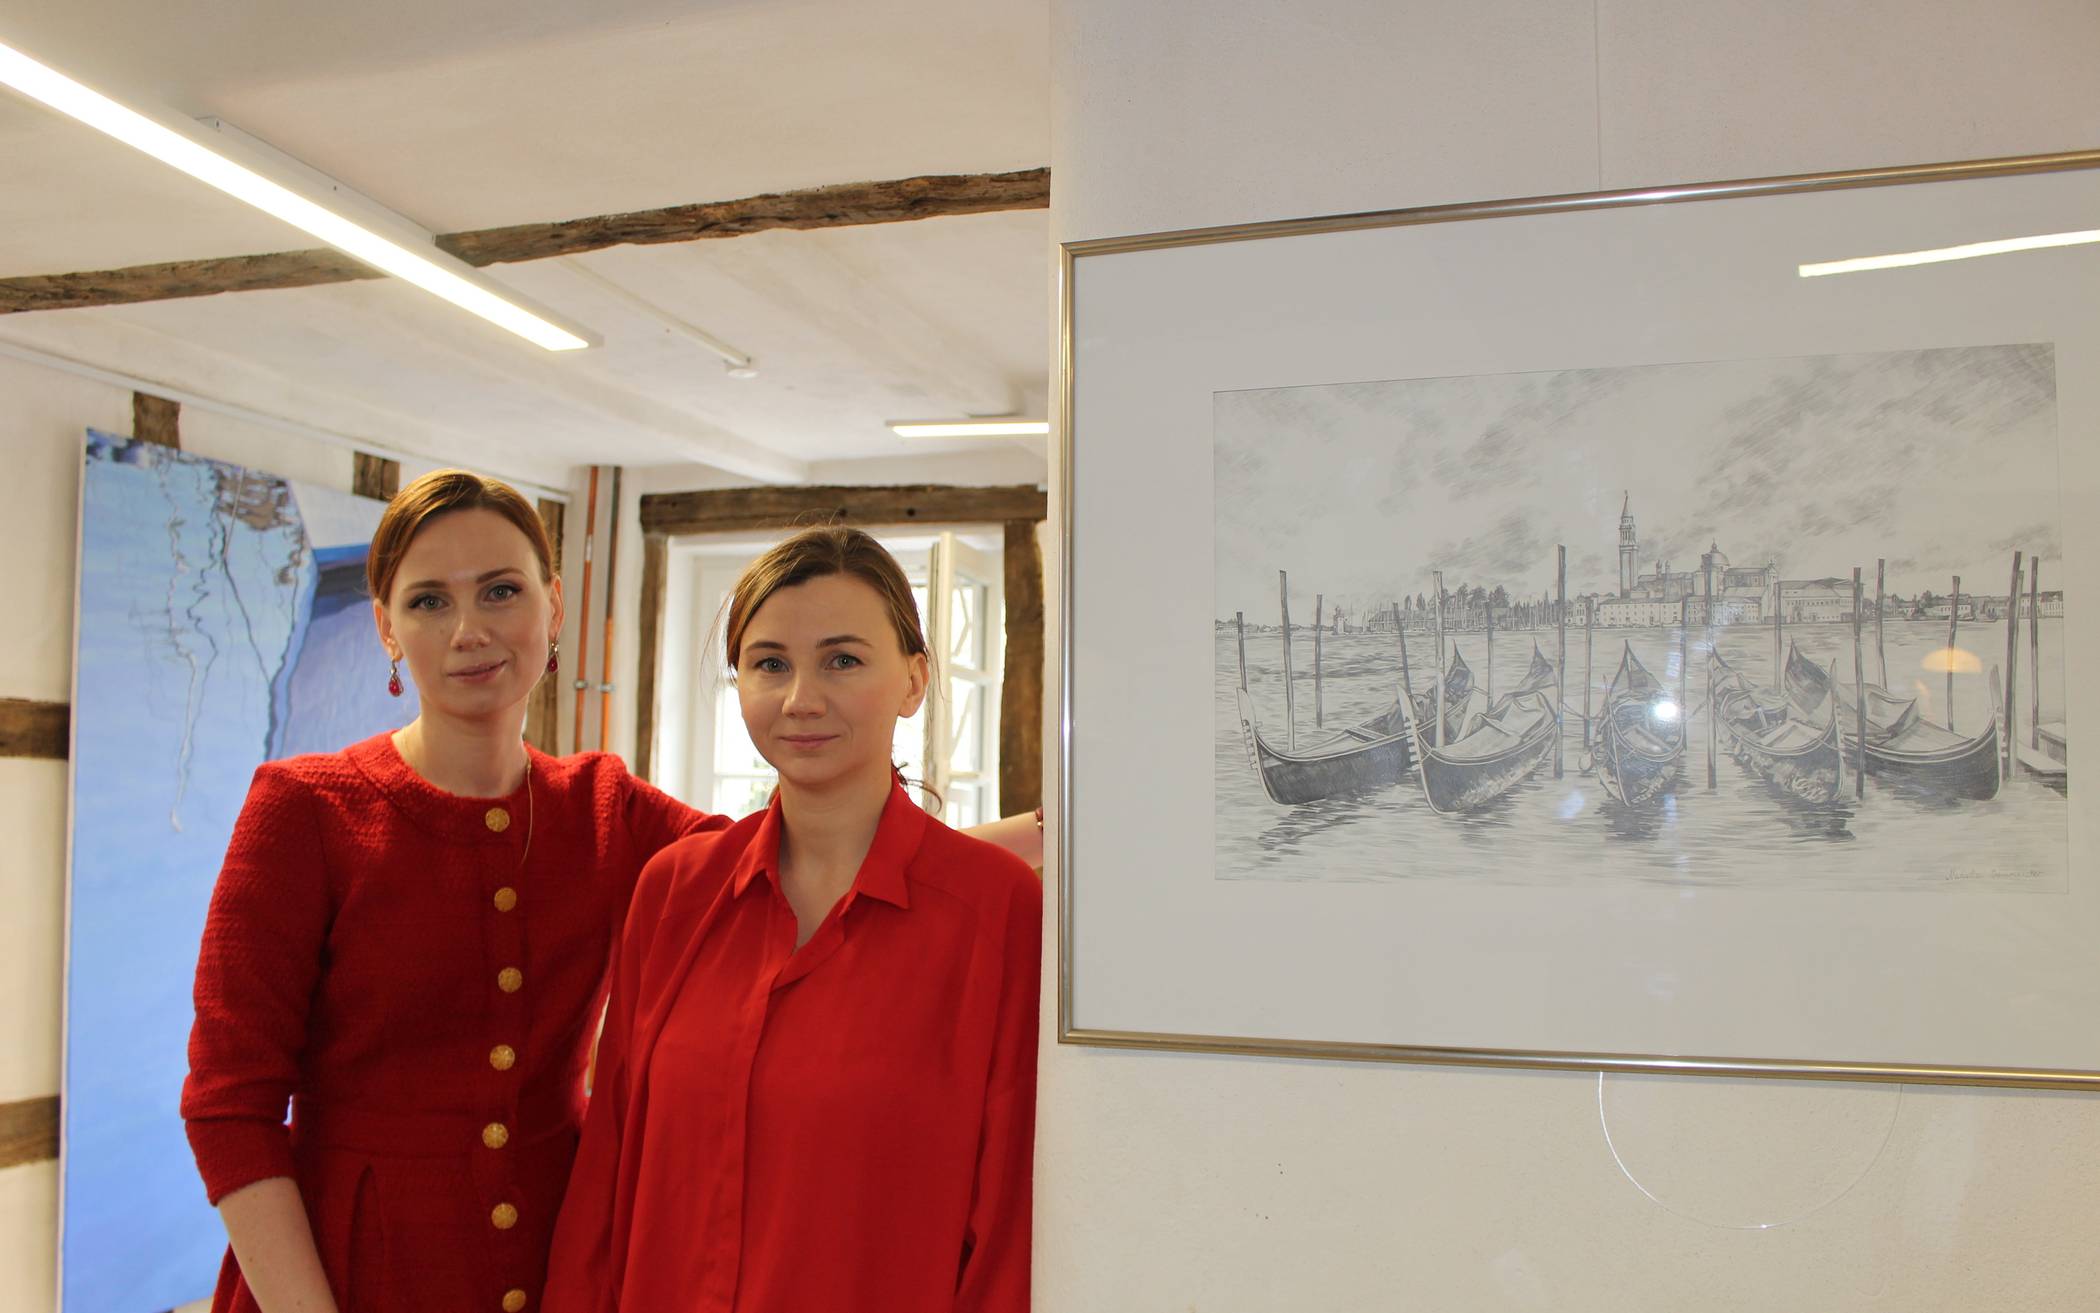  Die Schwestern Ekaterina Gasmi und Natalia Baumeister stellen im Kunsthaus Mettmann aus. 